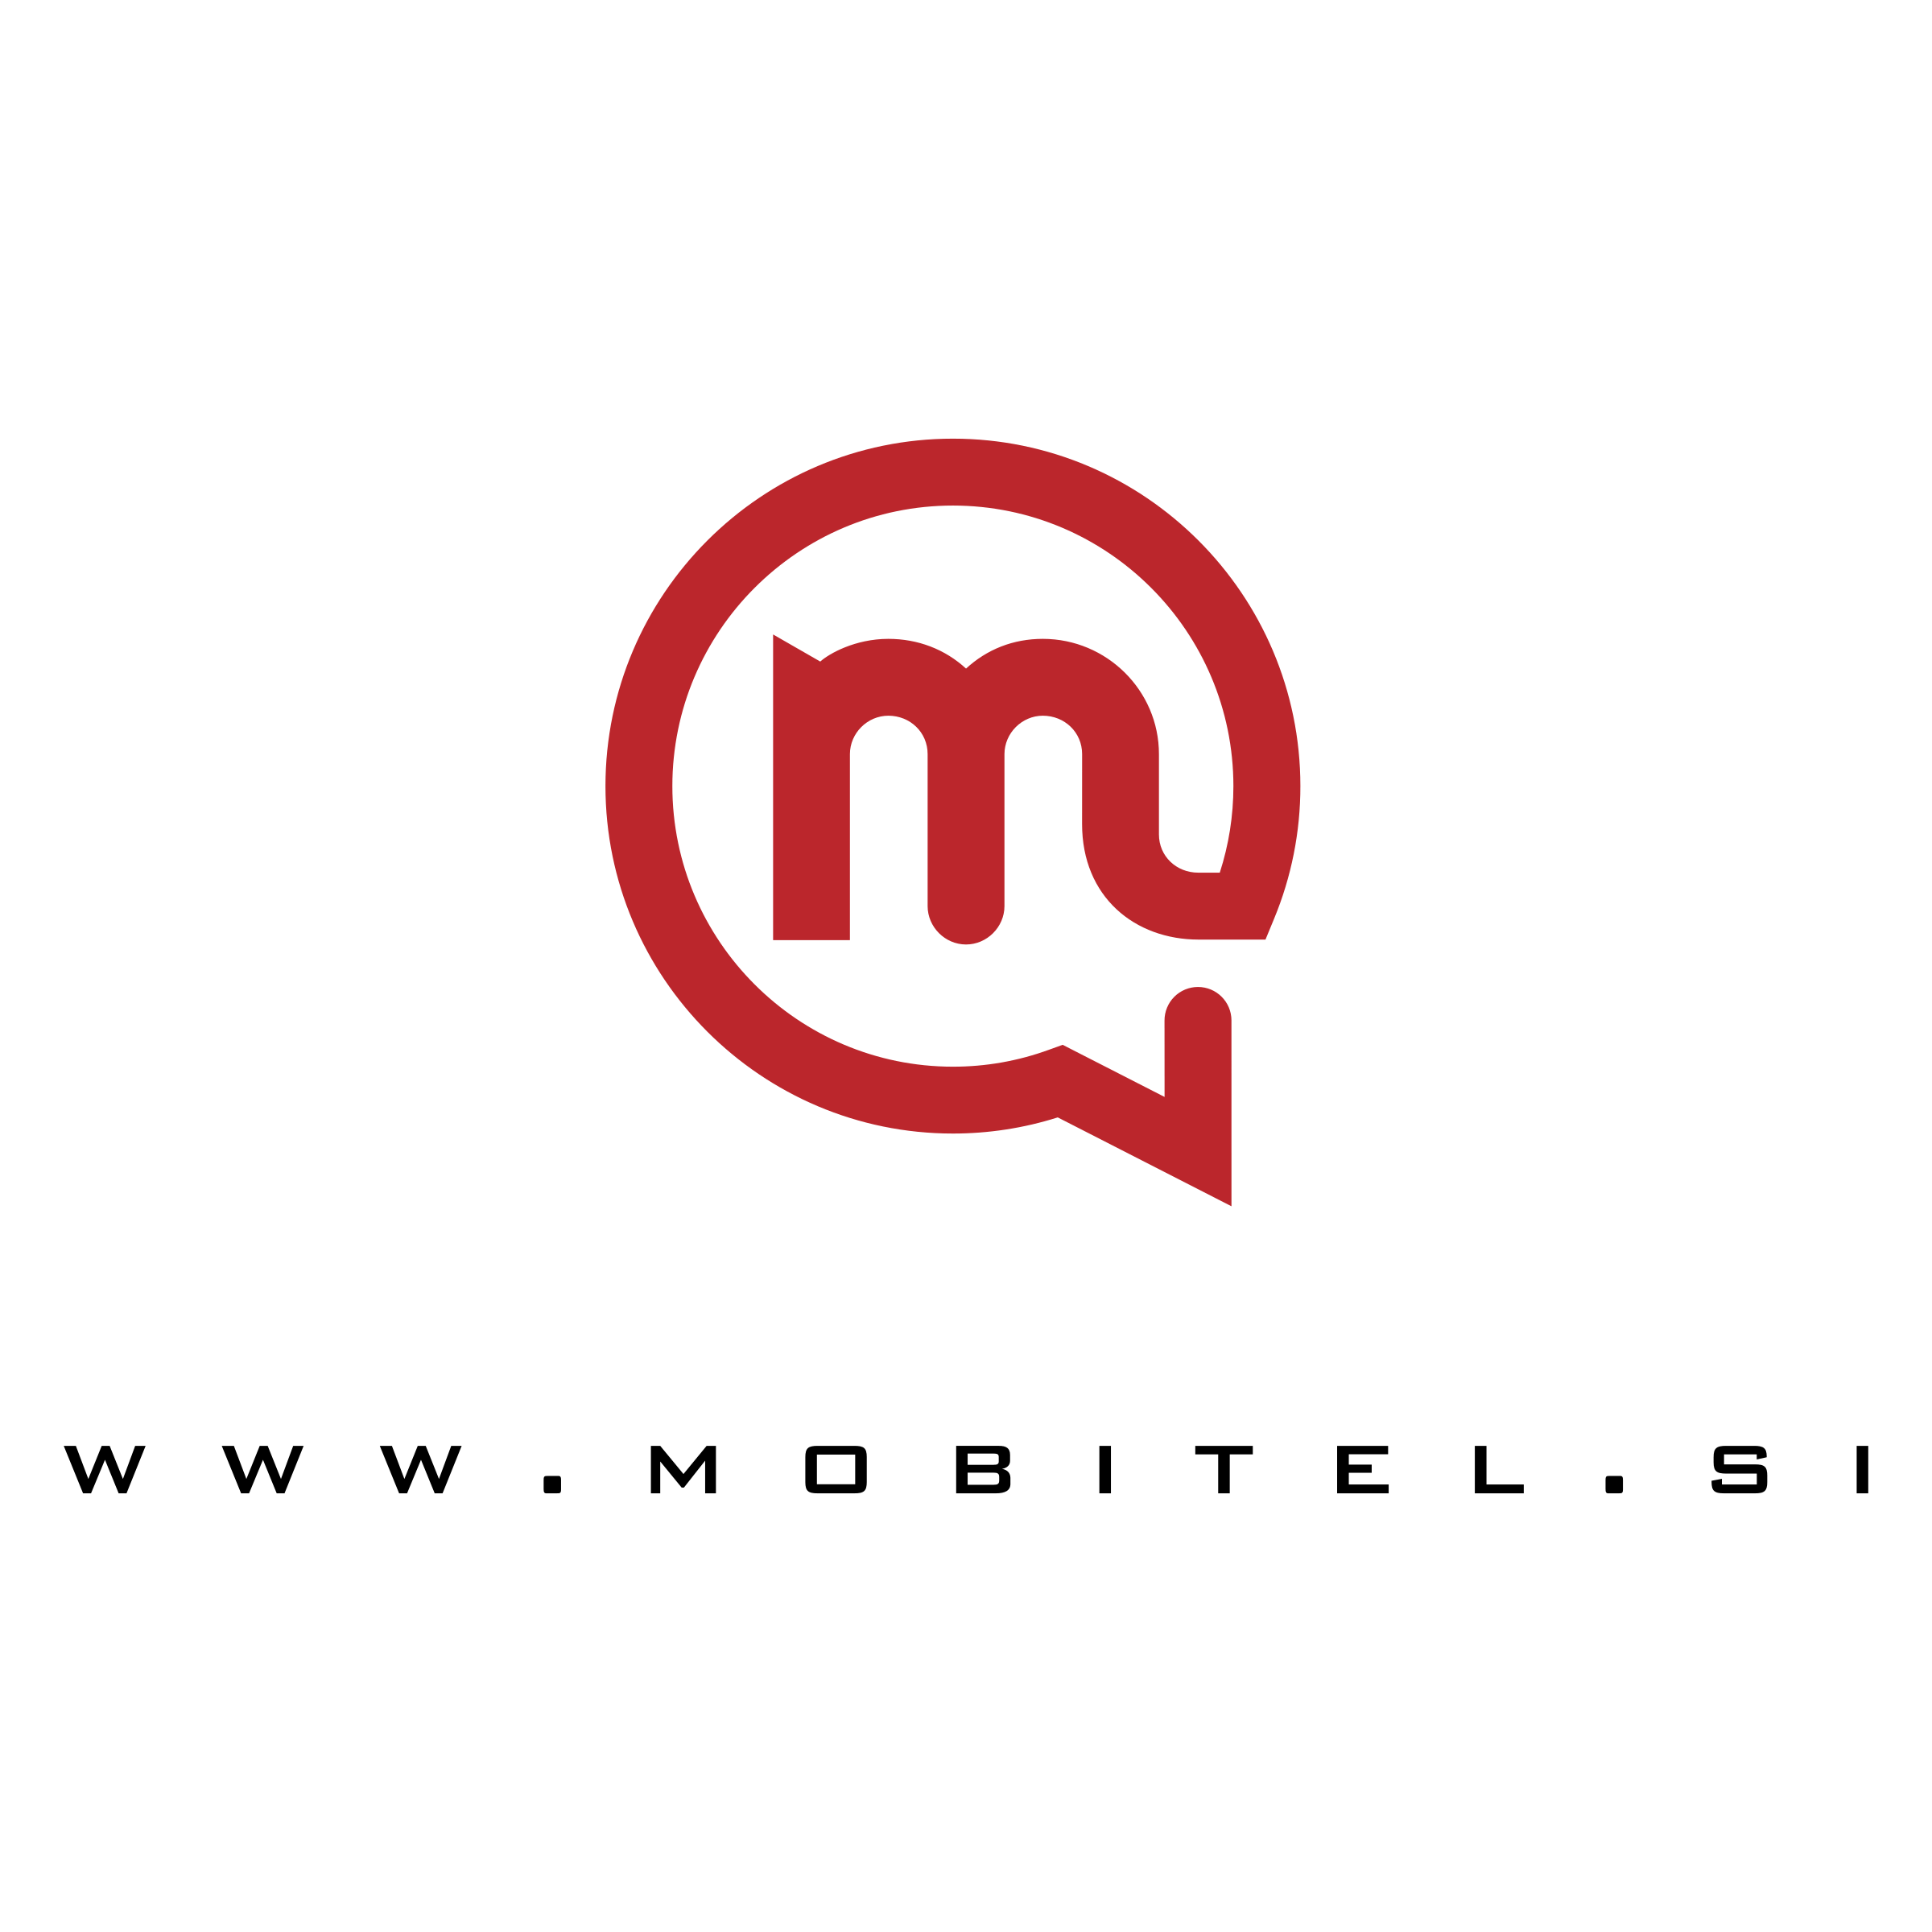 Mobitel Logo - Mobitel Logo PNG Transparent & SVG Vector